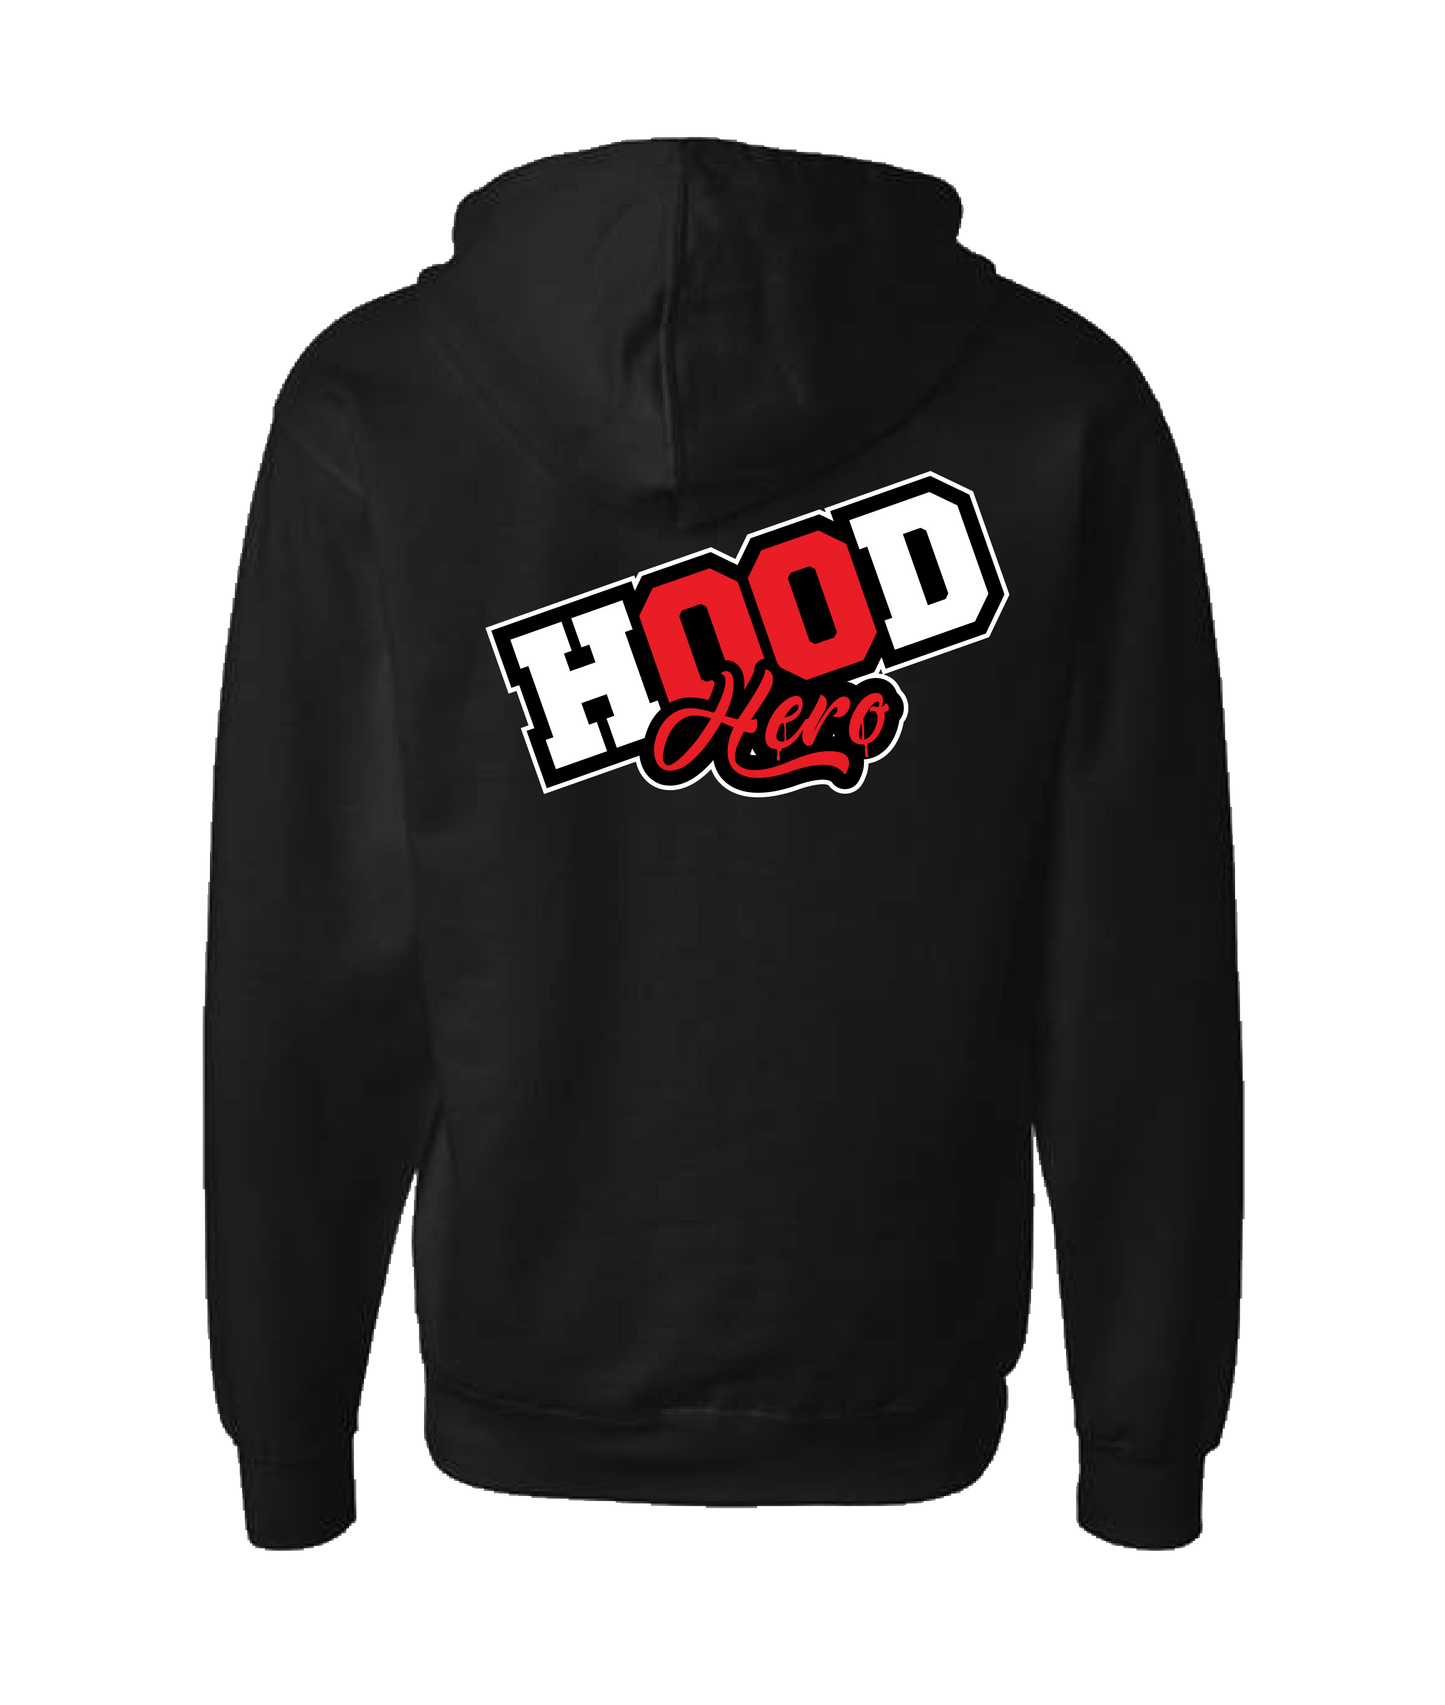 HustleMadeJhooks - Hood Hero - Black Zip Up Hoodie